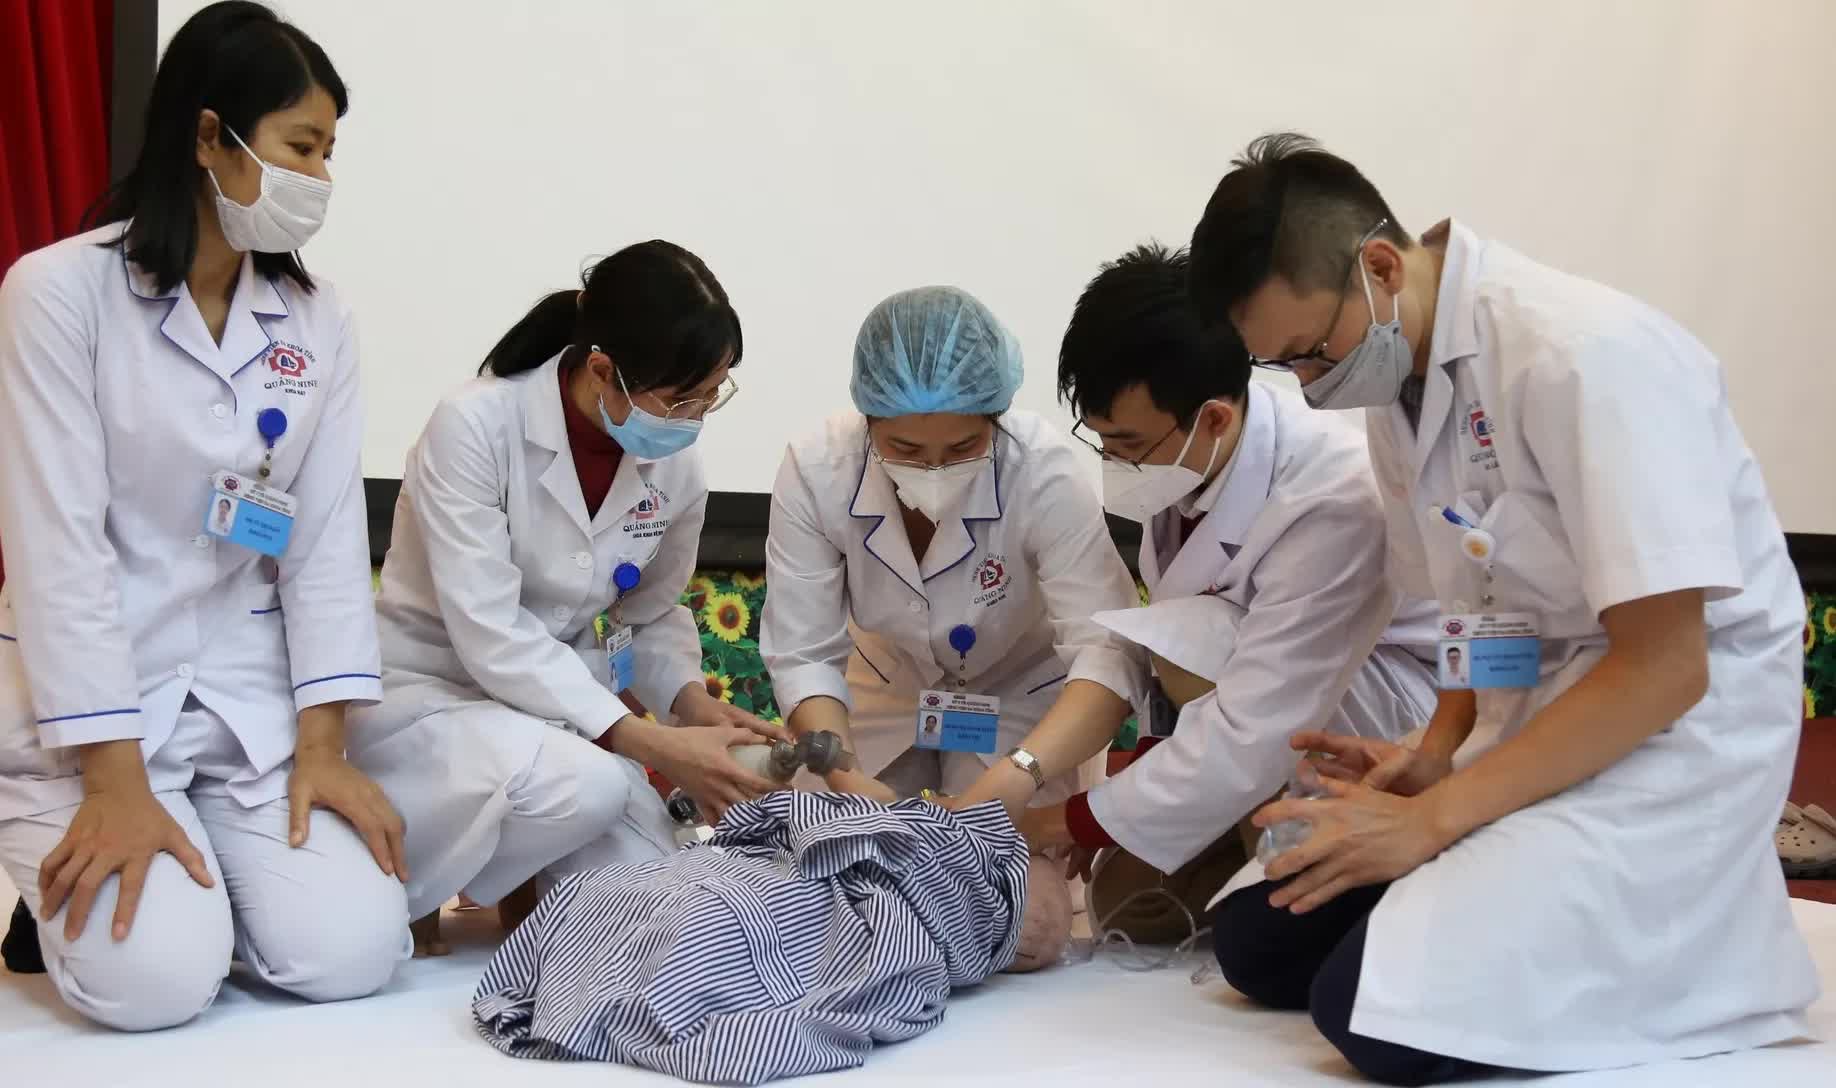 Hôm nay - 14/4, Việt Nam bắt đầu tiêm vaccine phòng COVID-19 cho trẻ từ 5 - dưới 12 tuổi - Ảnh 6.